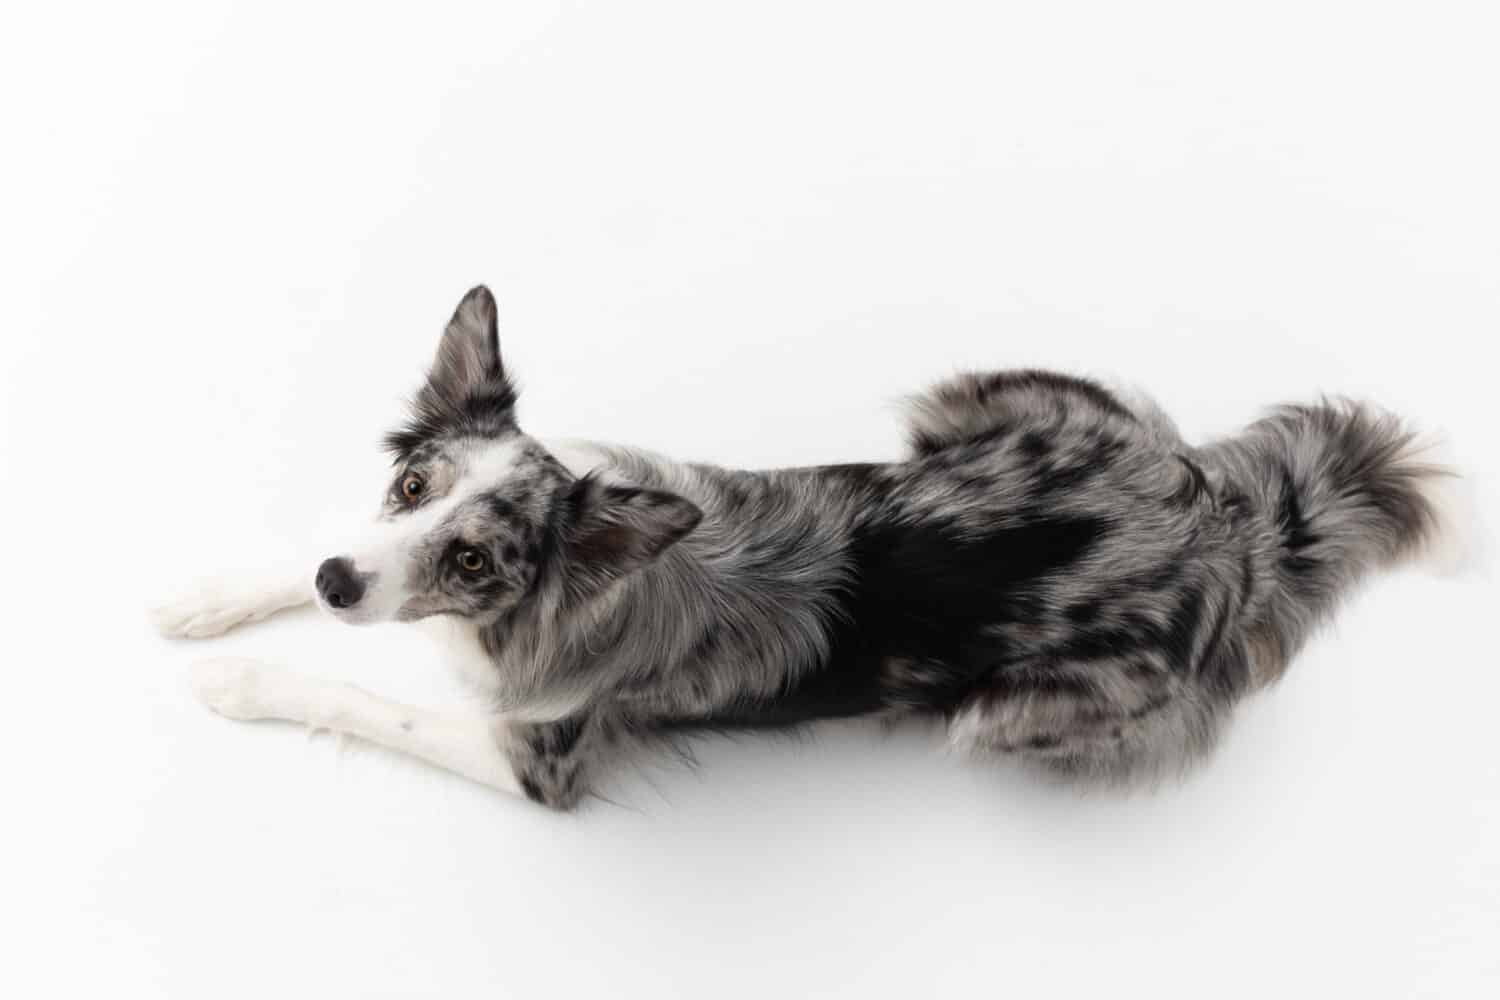 Un cane Border Collie giace su uno sfondo bianco.  Vista dall'alto.  Il cane è colorato nei toni del bianco e del nero e ha il pelo lungo e delicato.  Un ottimo cane da pastore.  Cornice panoramica.